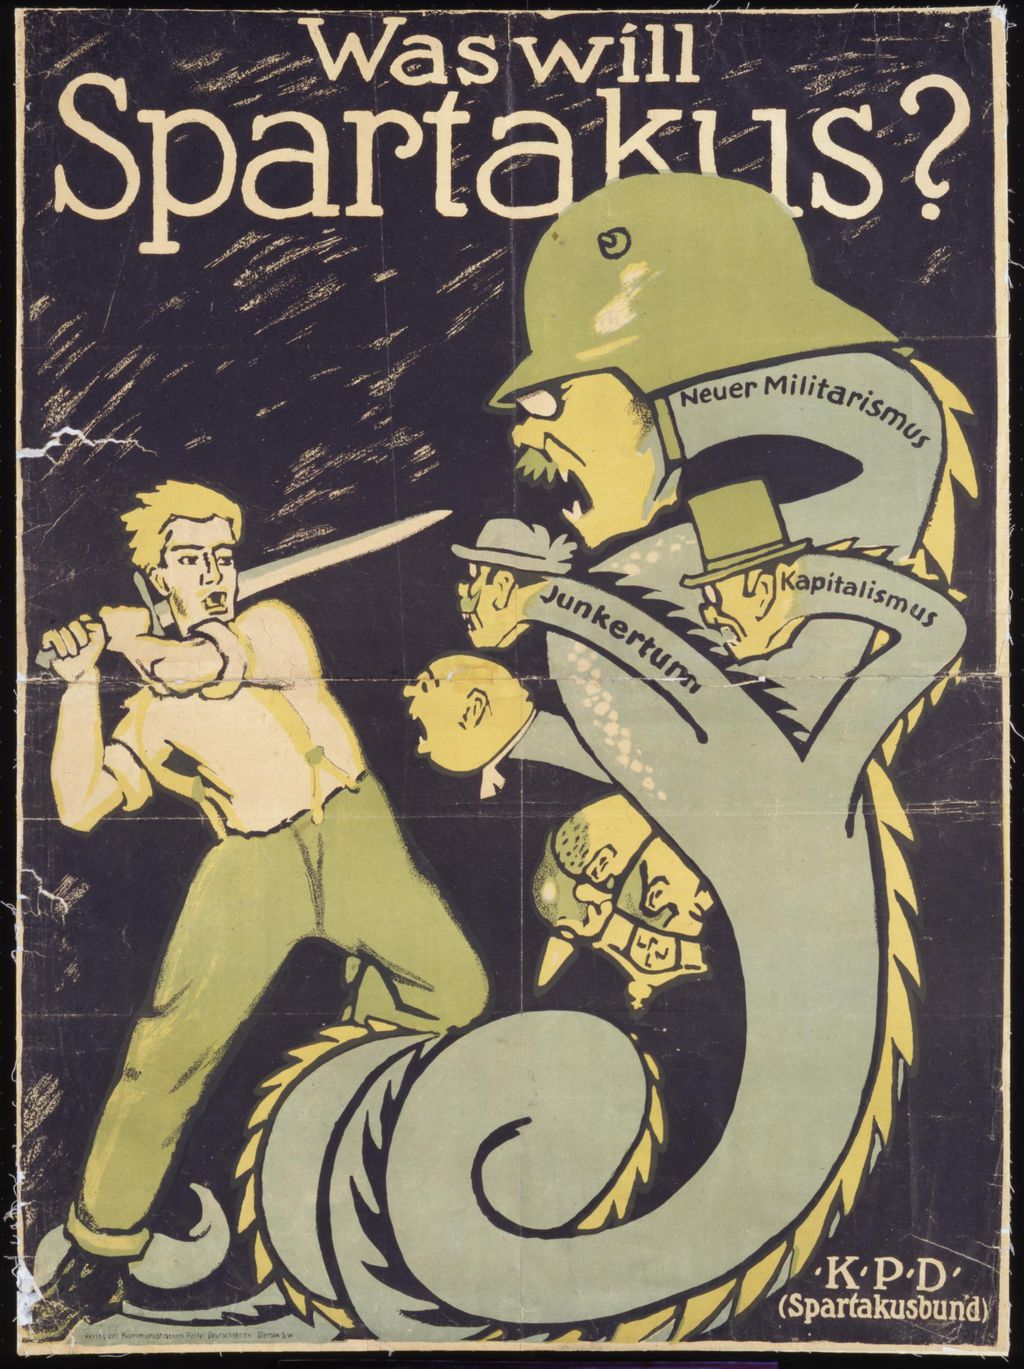 Exponat: Plakat: KPD (Spartakusbund) "Was will Spartakus", 1919